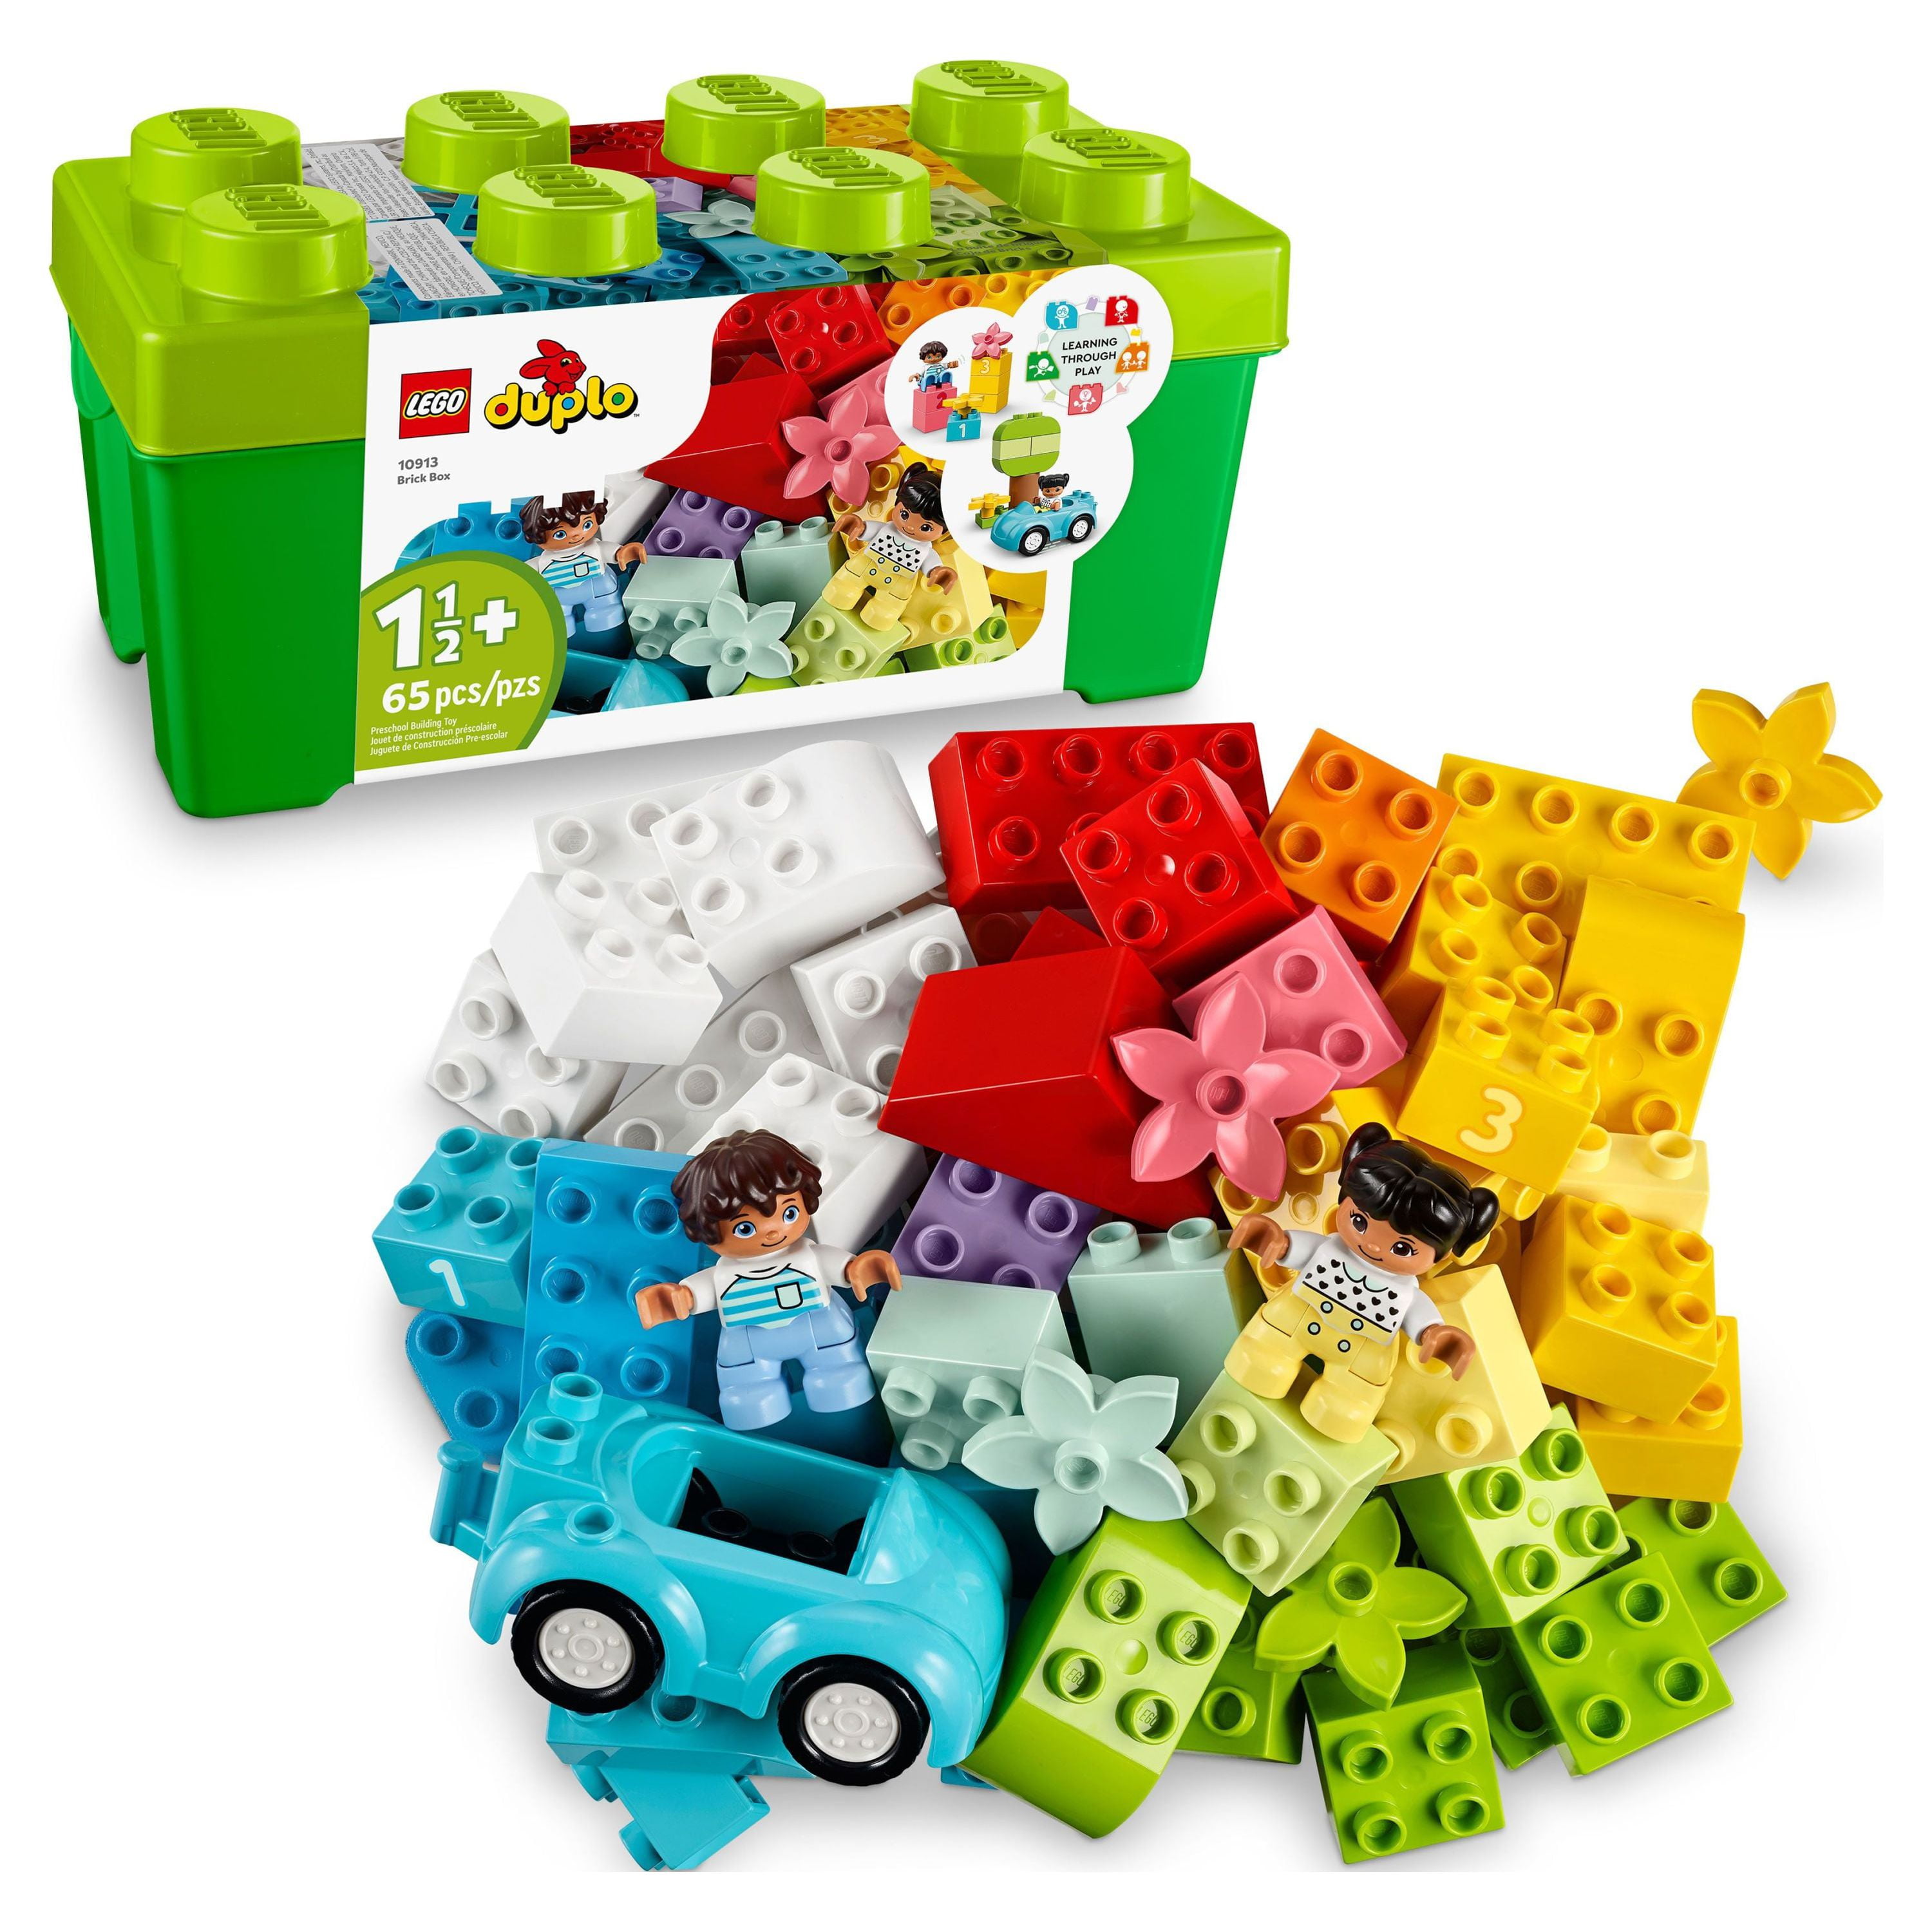 Lot de Lego Duplo et blocks de construction - LEGO DUPLO